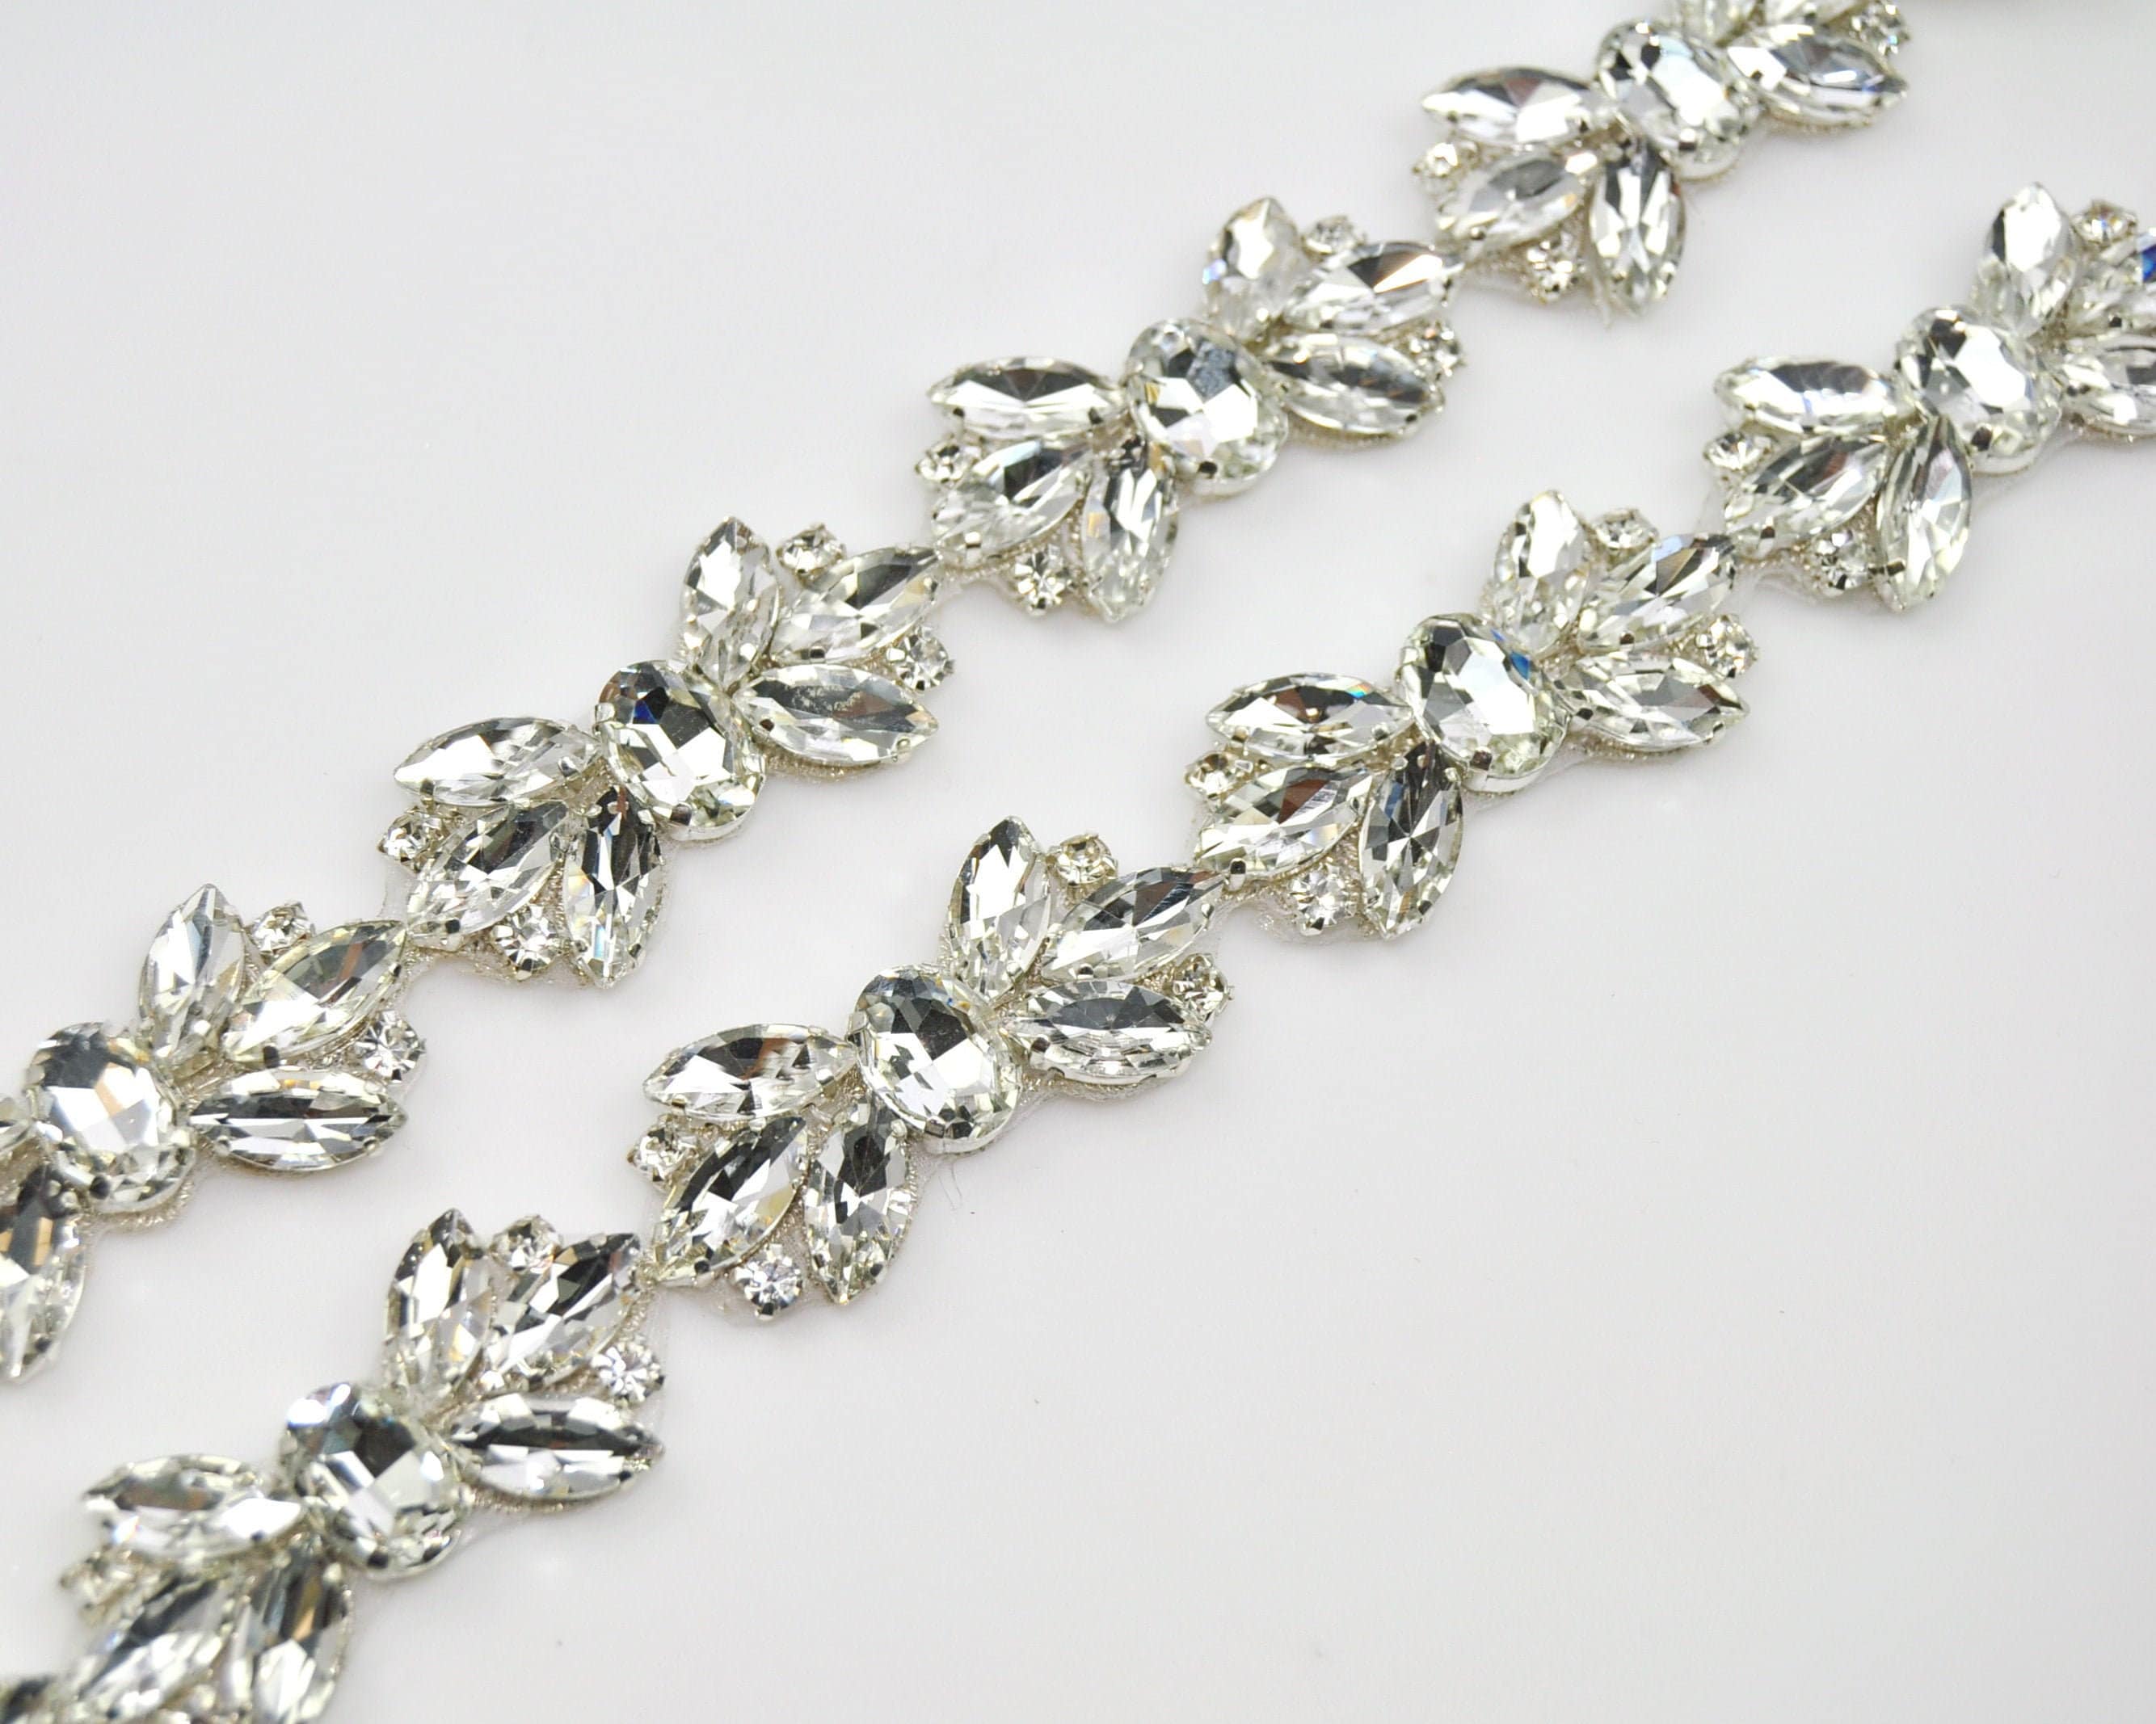 1 Yard Crystal Rhinestone Trim Silver Chain Wedding Bridal Sash Embellishment 